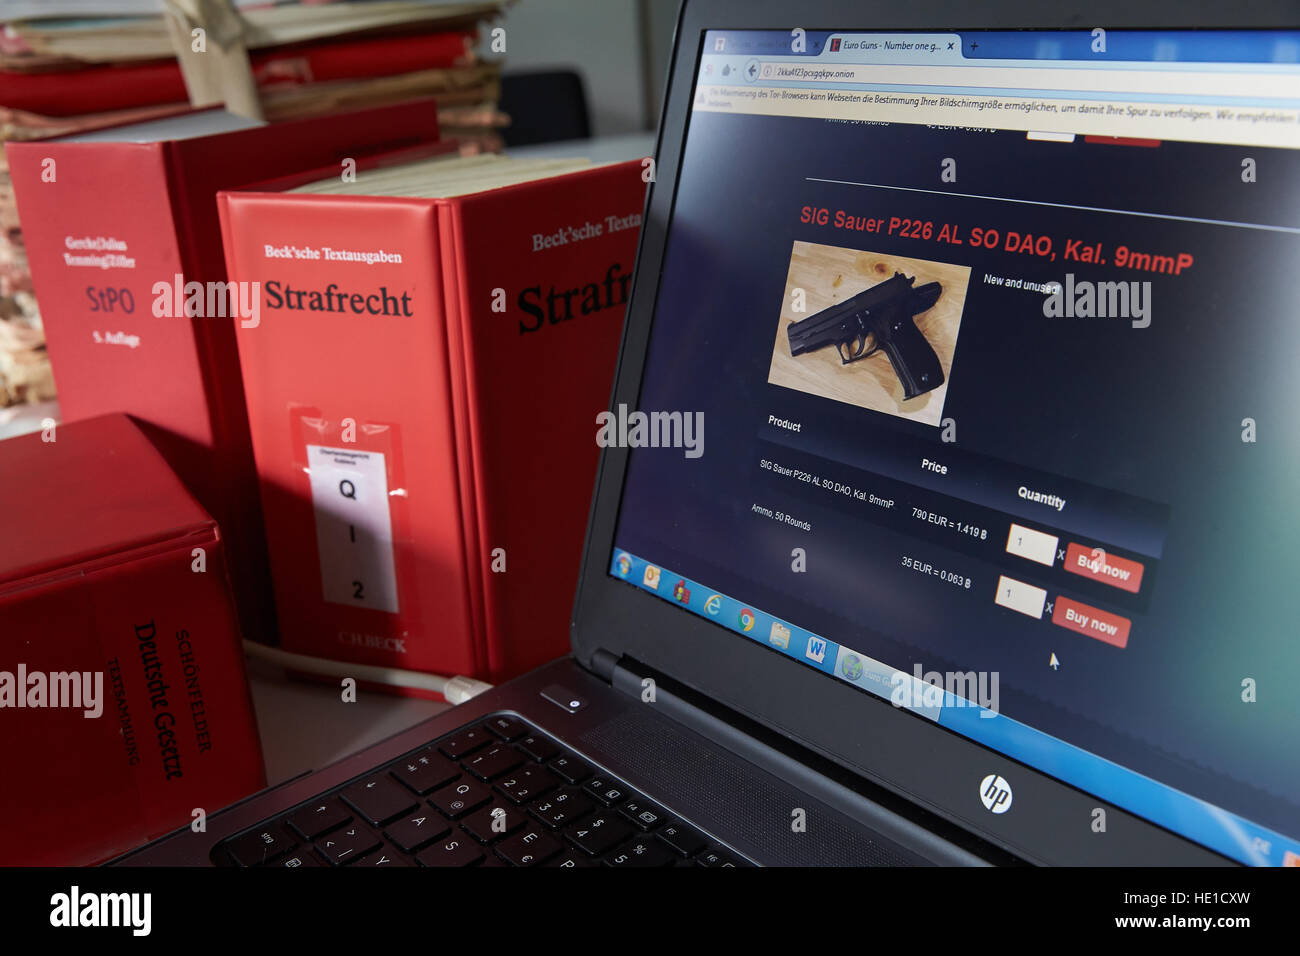 Laptop screen, Darknet firearms website, criminal law books, Germany Stock Photo